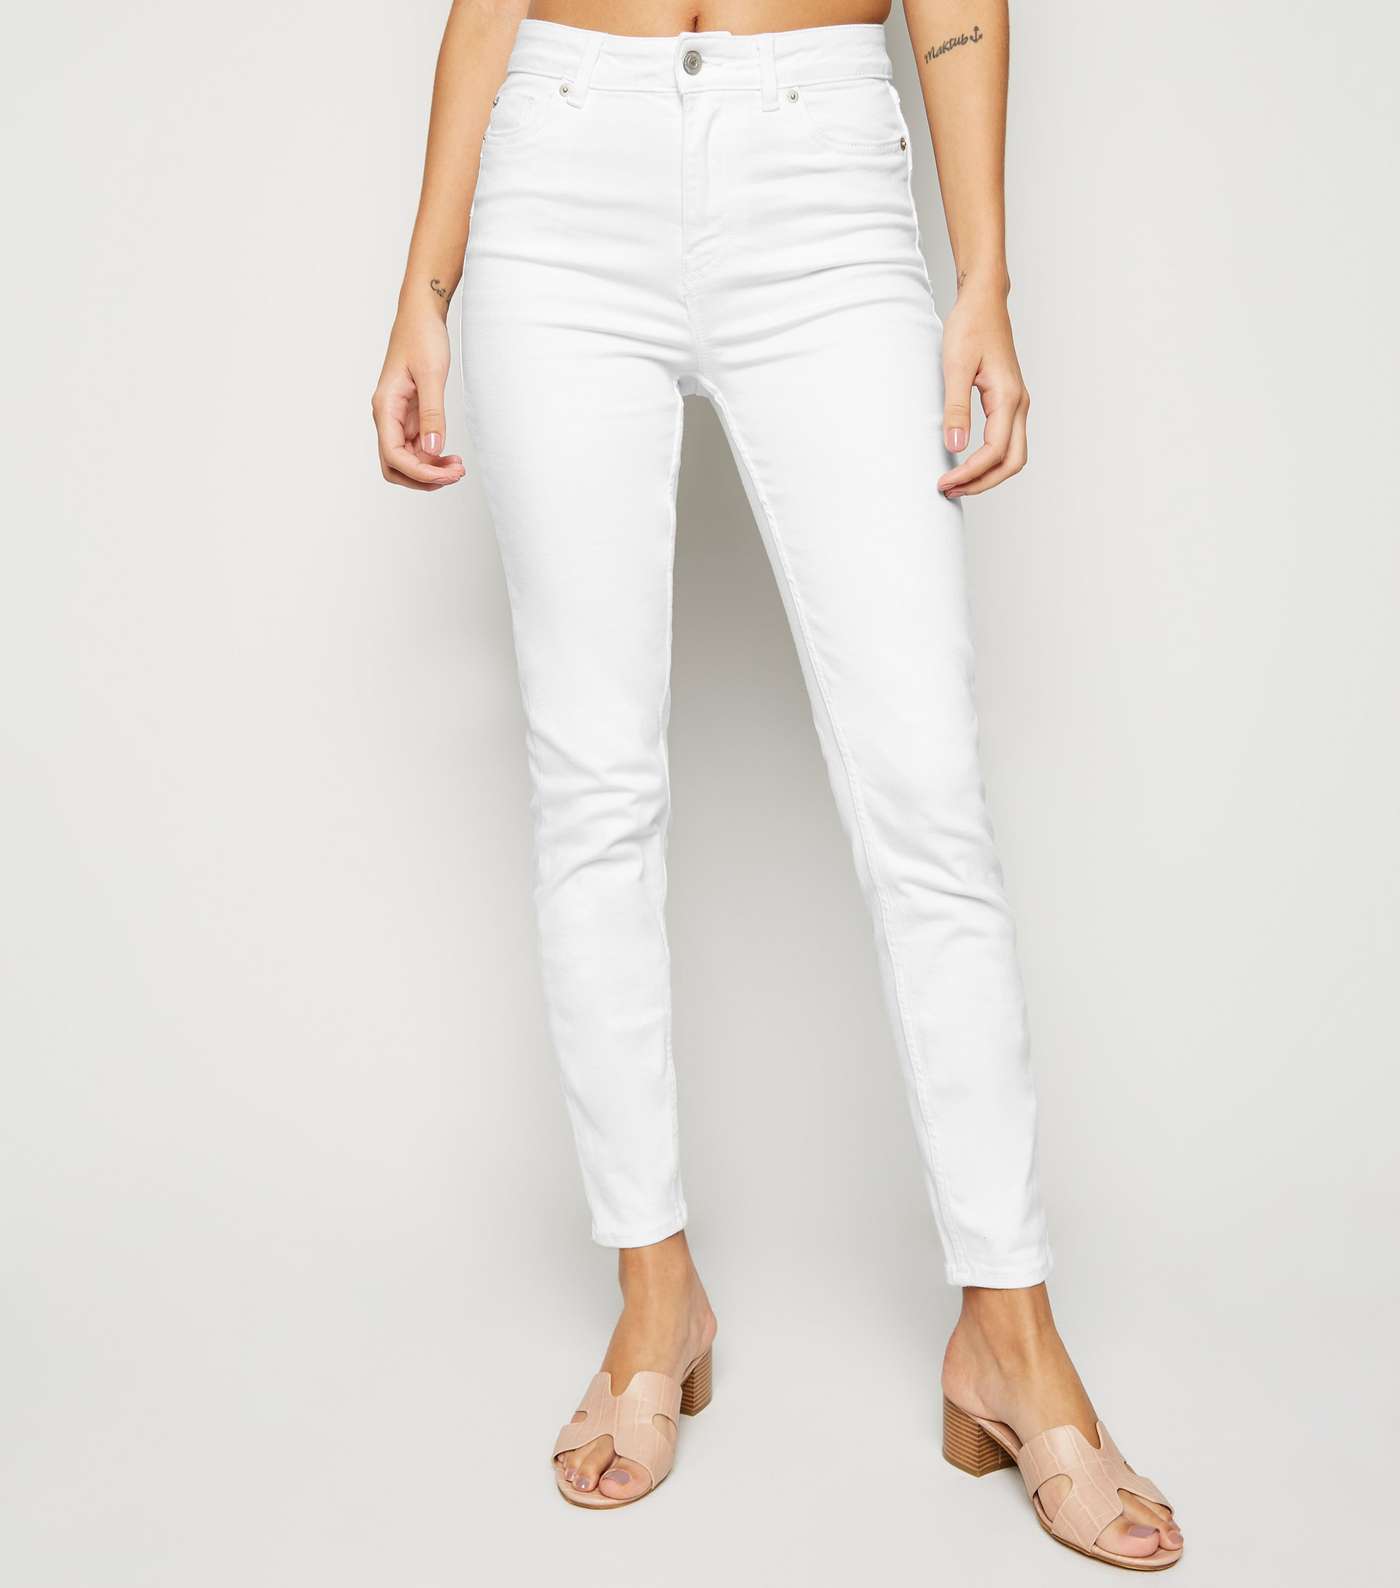 White High Waist 'Lift & Shape' Skinny Jeans Image 2